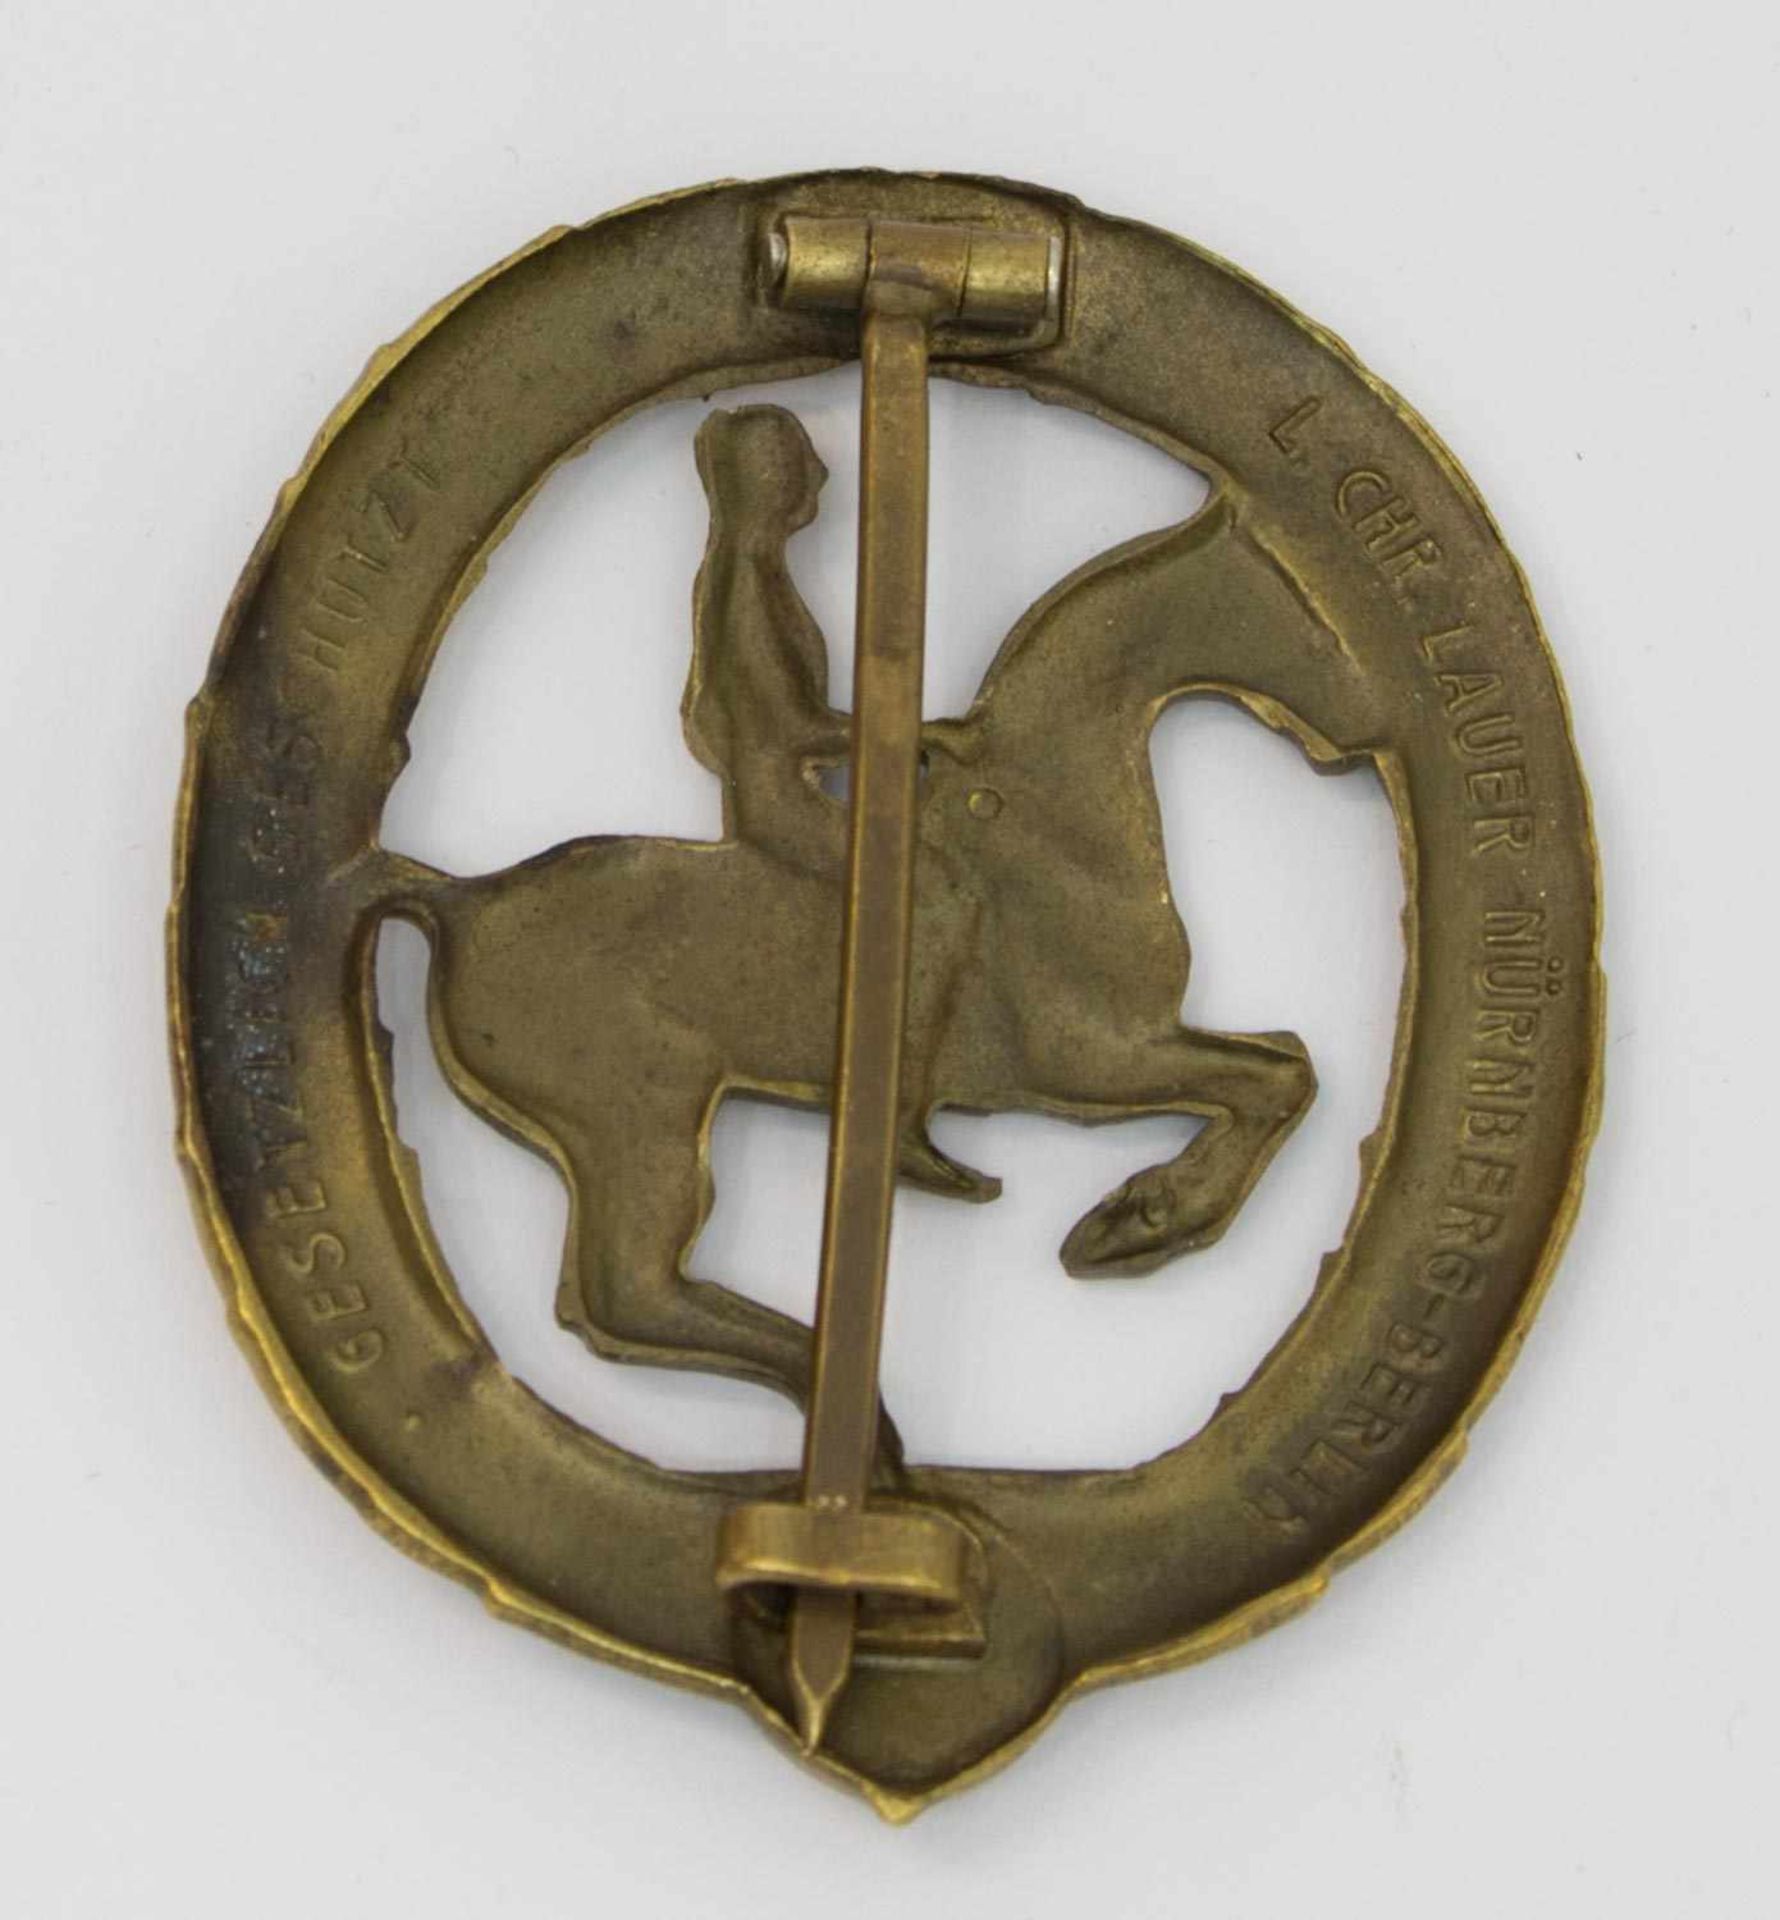 Deutsches Reiterabzeichen III. Reich, Klasse 3 in Bronze, Herst. L.Chr. Lauer Nürnberg-Berlin - Bild 2 aus 2